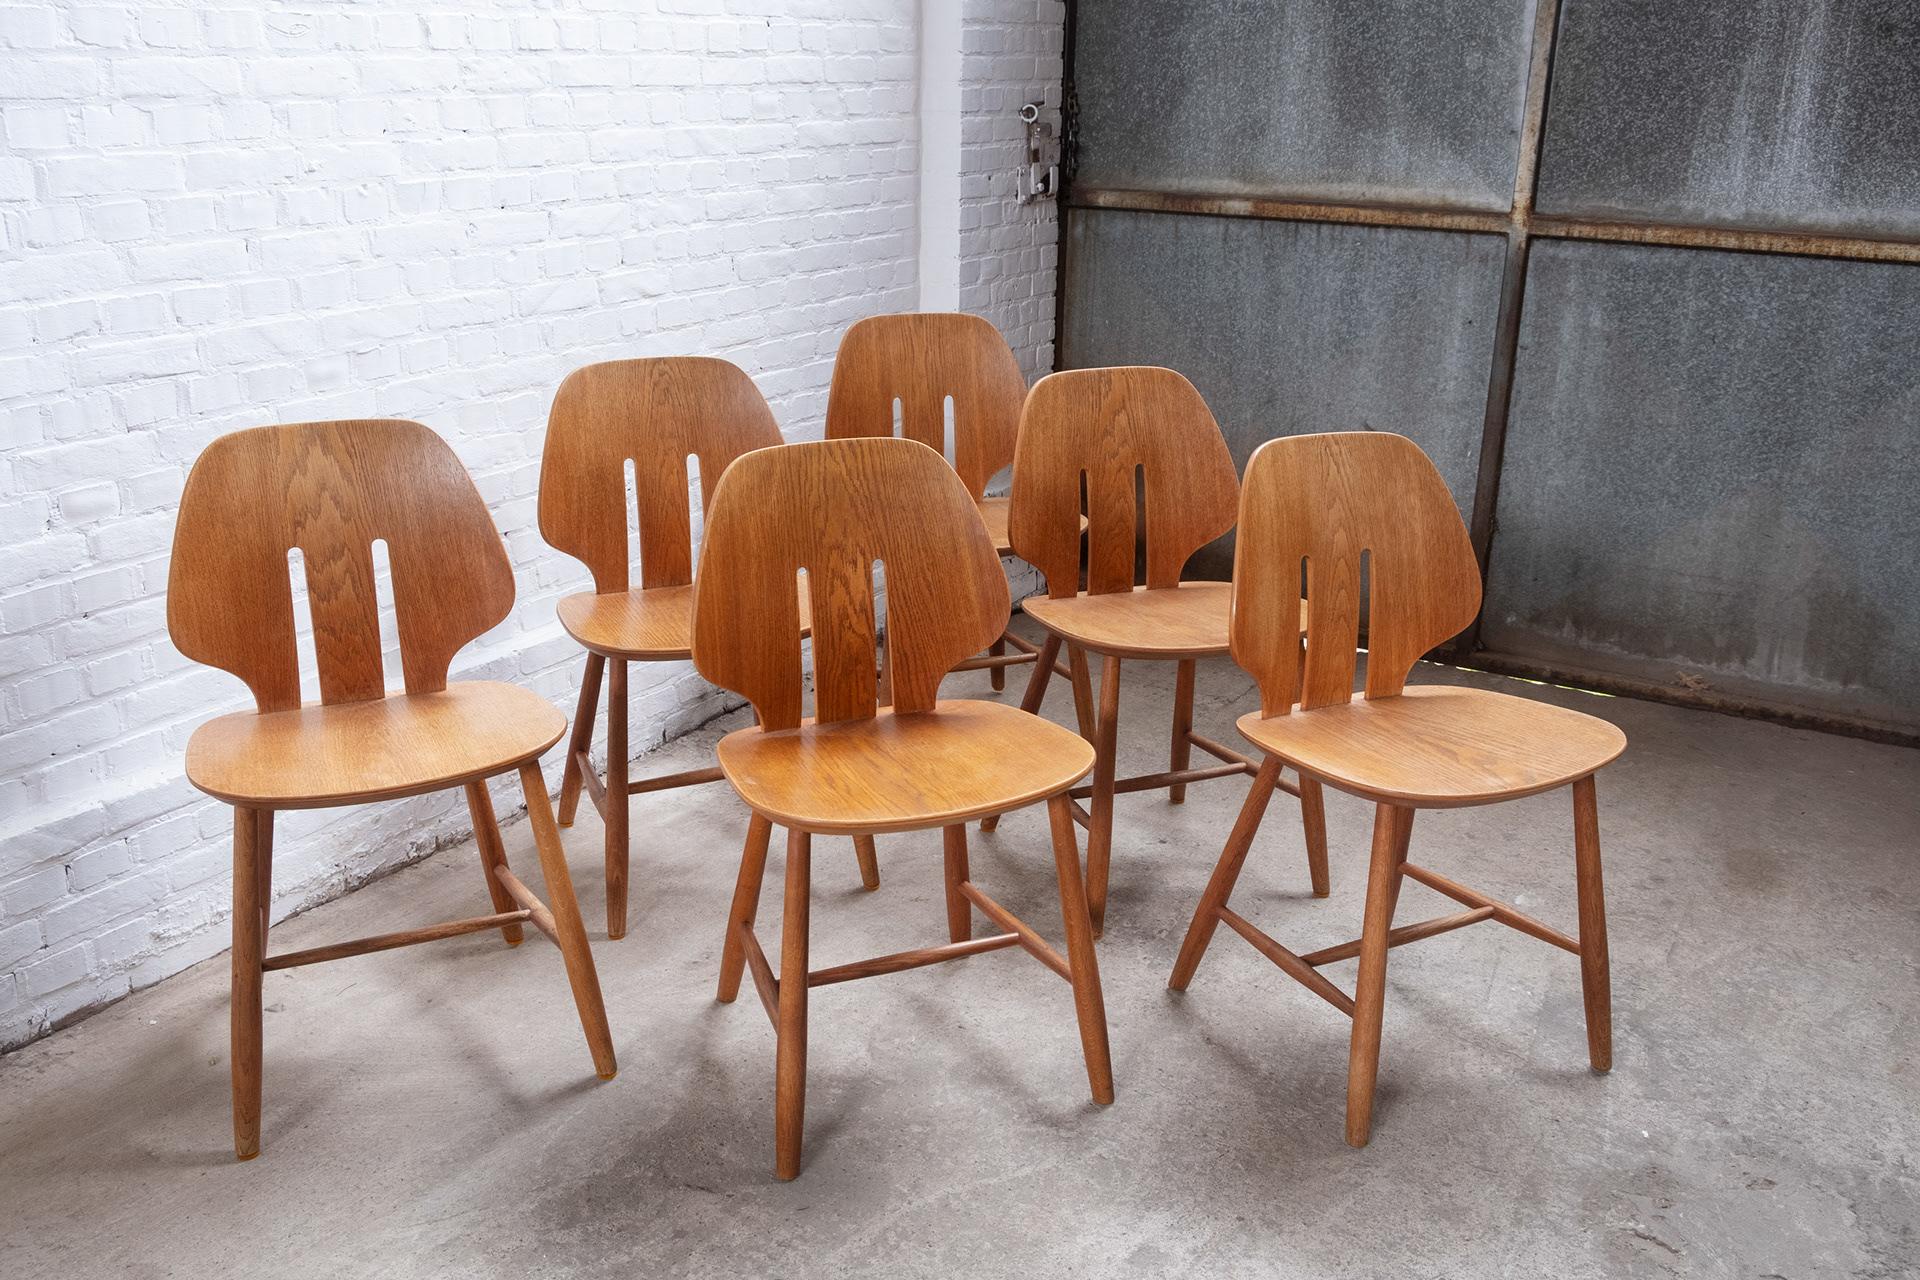 Superbe ensemble de 6 chaises de salle à manger, modèle J67 du designer Ejvind A. Johansson pour FDB Møbler, en chêne fumé.
La chaise a été conçue en 1957, cet ensemble a été produit au début des années 1960.
Toutes les chaises ont été inspectées et